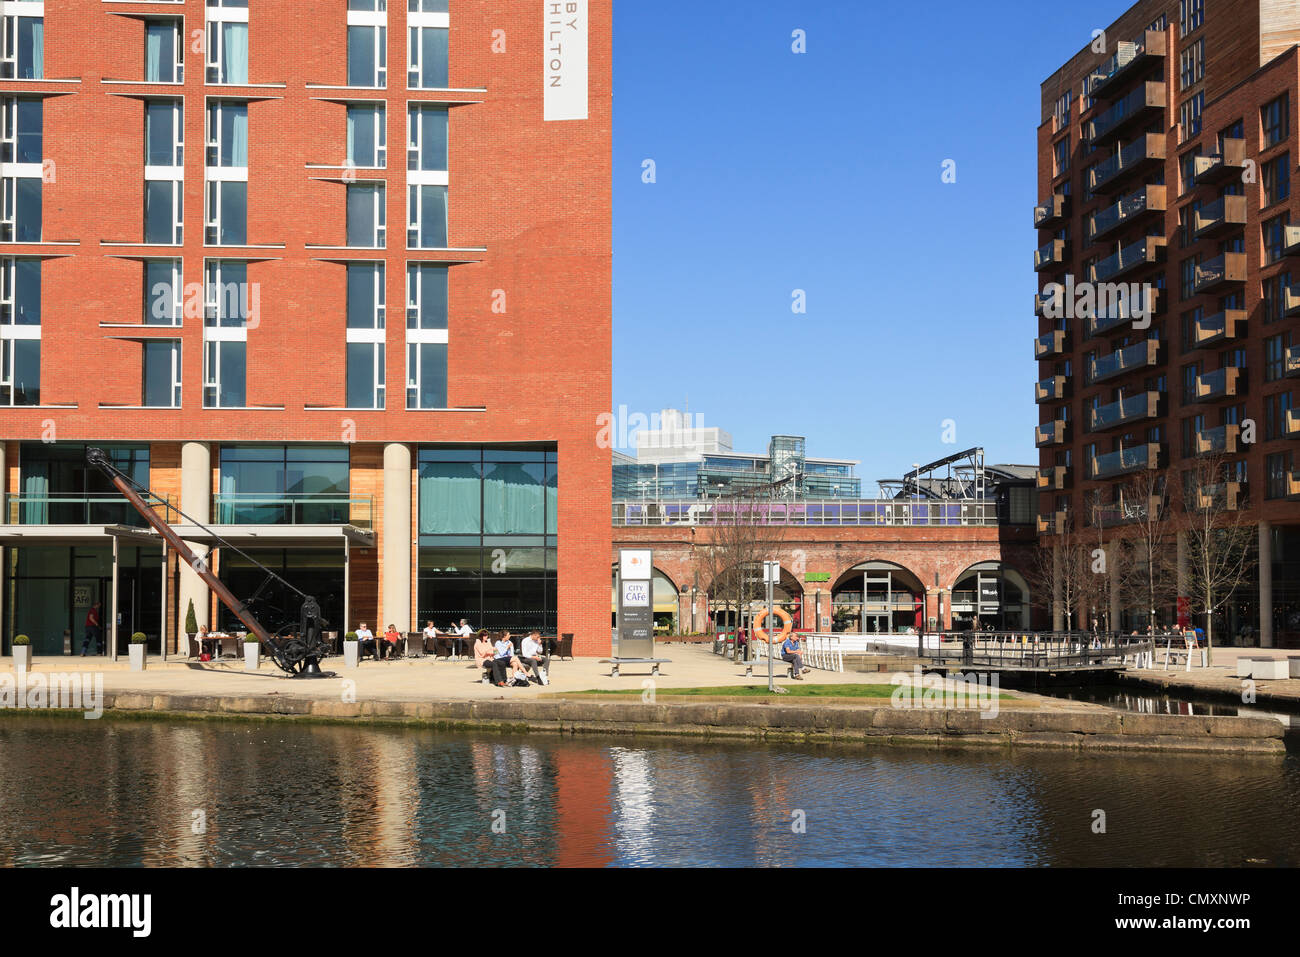 Blick über Leeds und Liverpool Canal zu modernen Gebäuden in sanierten Uferpromenade am Getreidespeicher Wharf Leeds Yorkshire England UK. Stockfoto